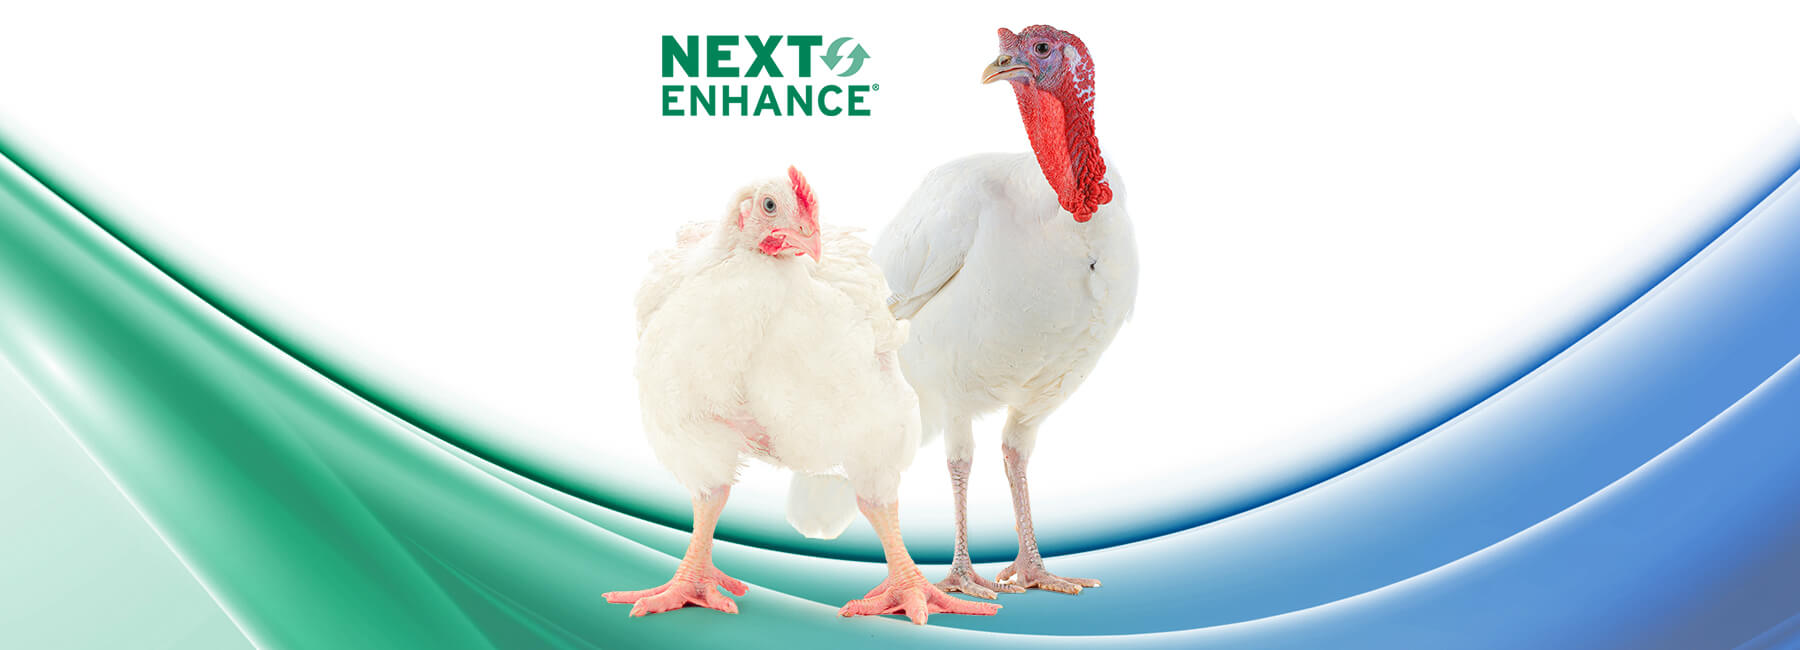 Next Enhance 150 – Desempenho produtivo e bem-estar dos animais